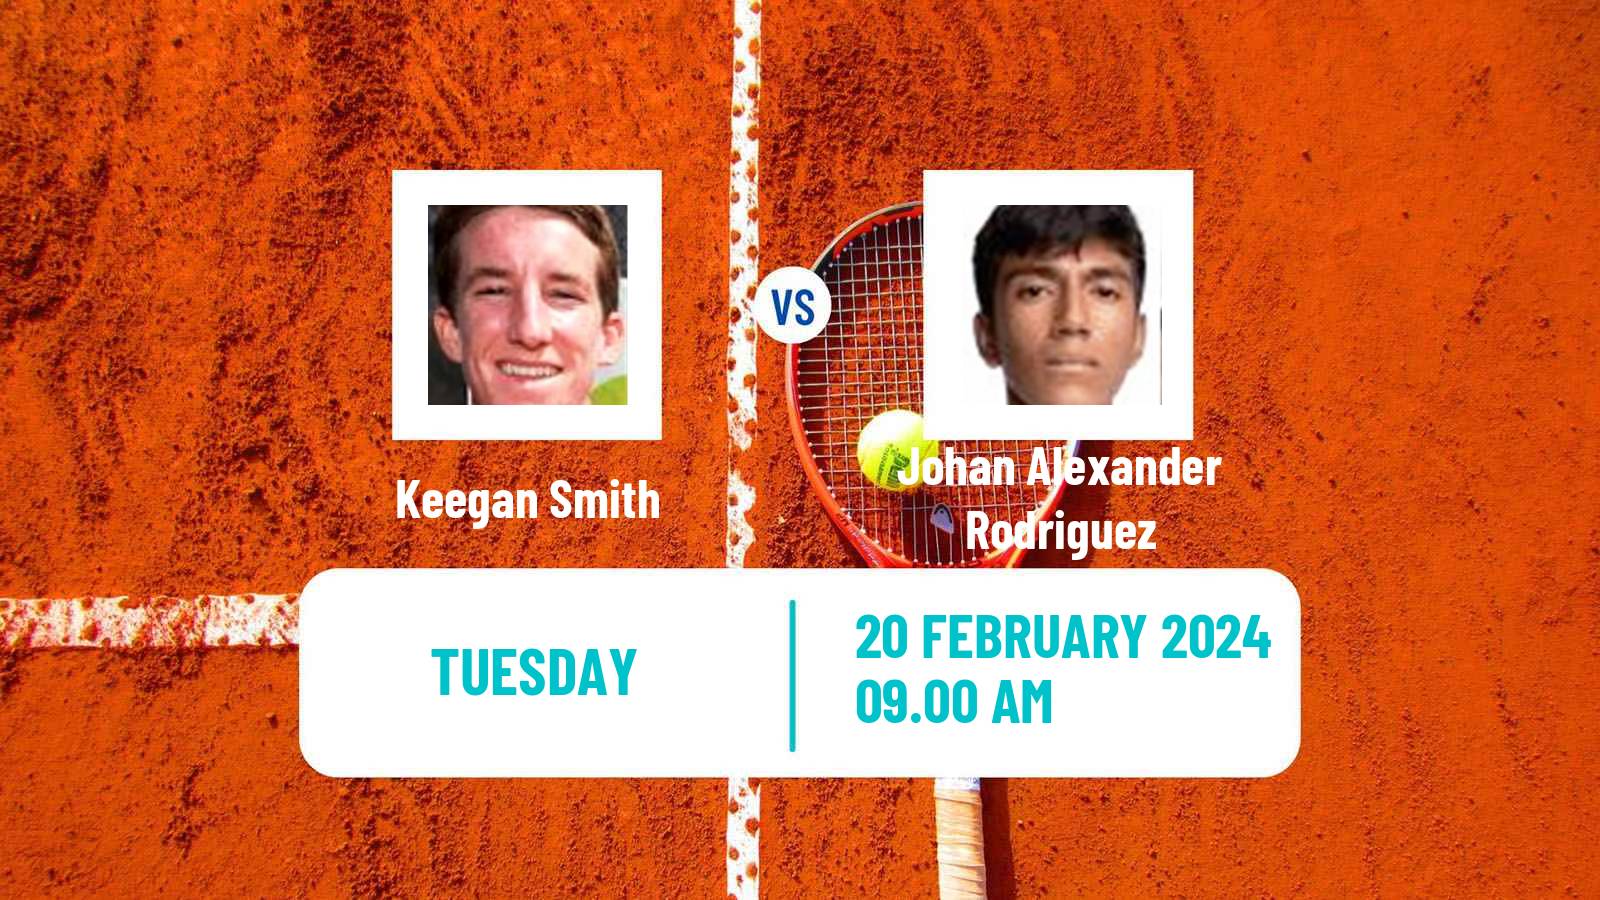 Tennis ITF M25 Vila Real De Santo Antonio 2 Men Keegan Smith - Johan Alexander Rodriguez